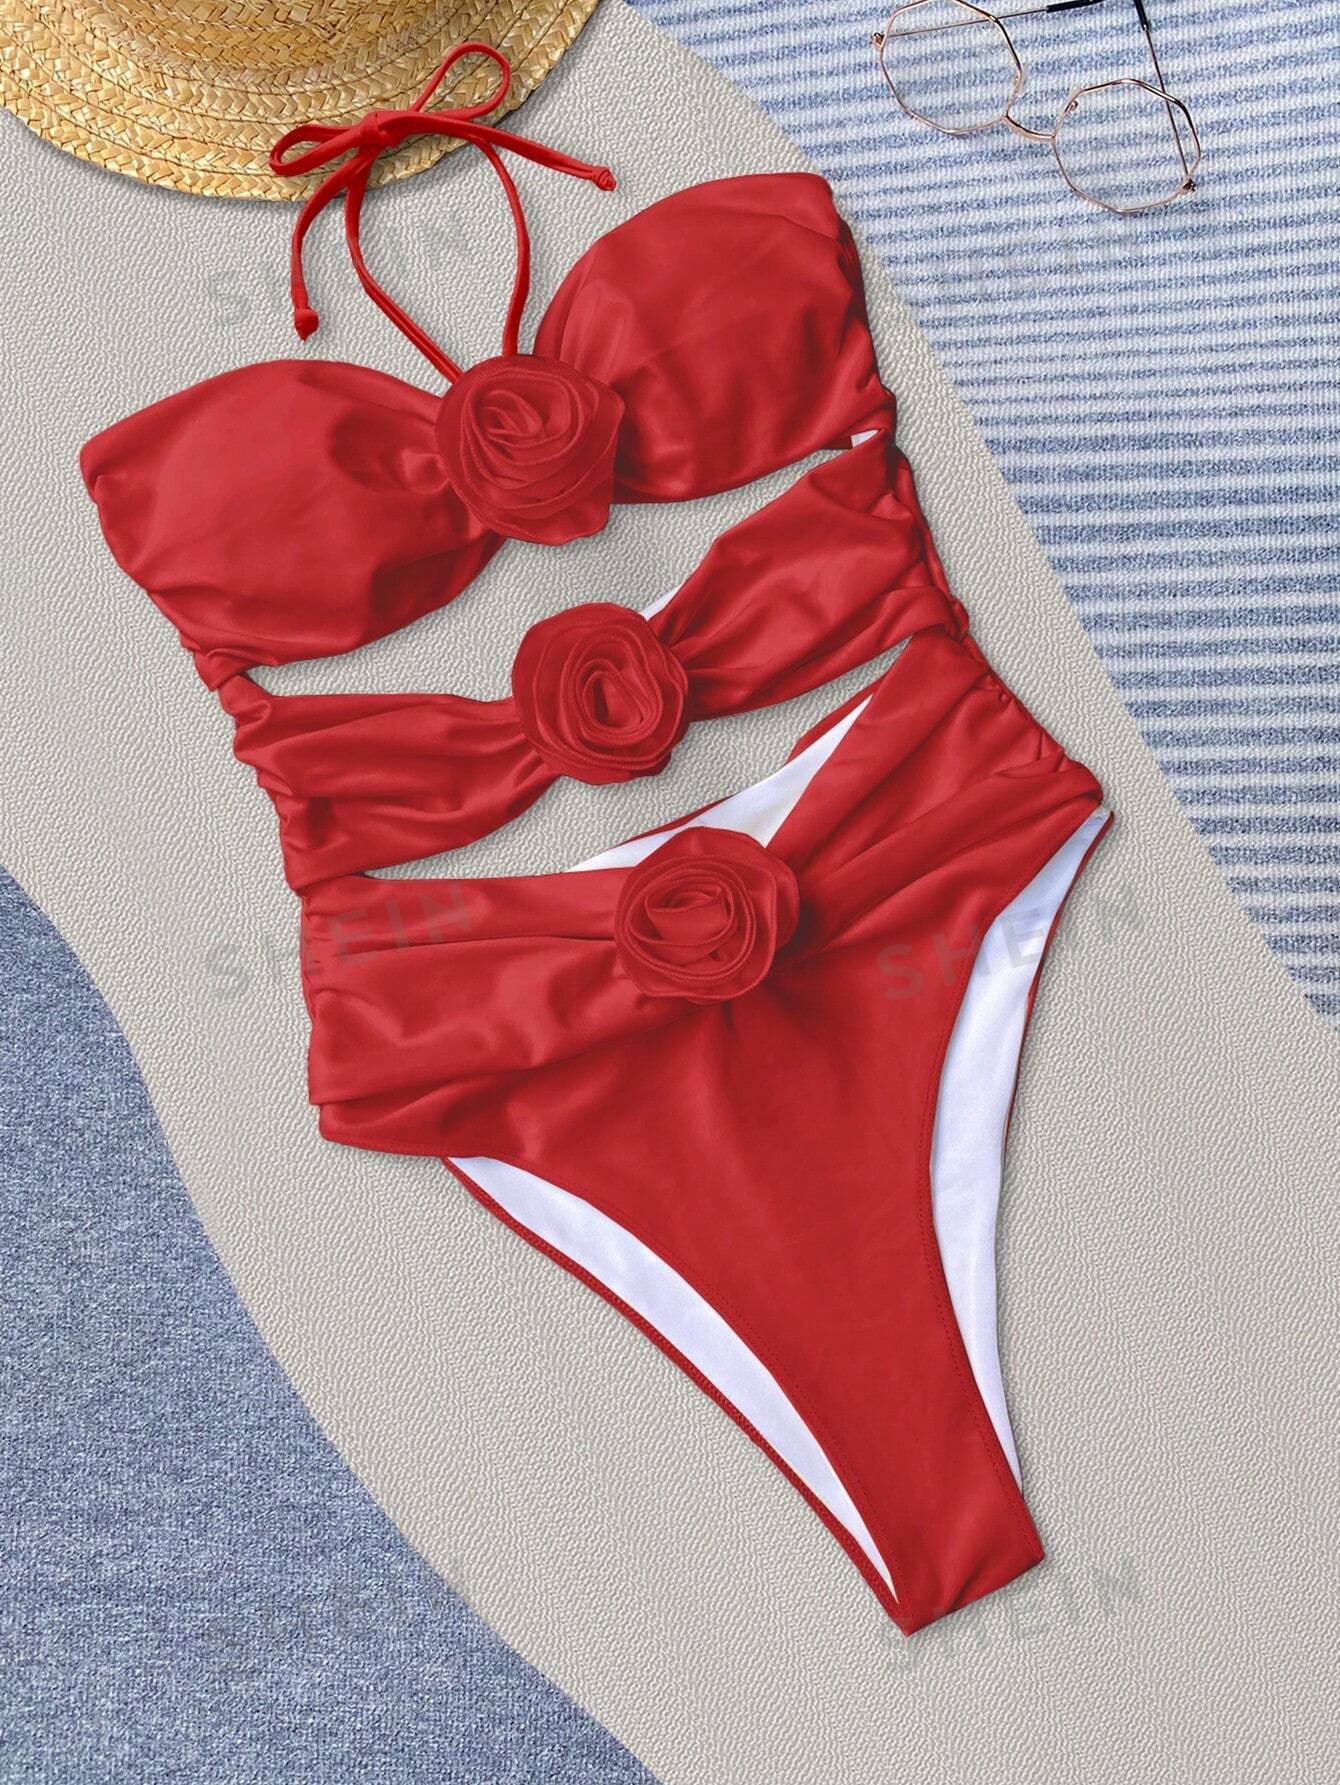 Bikinx сплошной цвет сексуальный ажурный купальник монокини с 3d цветочными деталями и вырезом на шее для женщин, красный сплошной купальник в полоску с бретелькой на шее aqua цвет multi